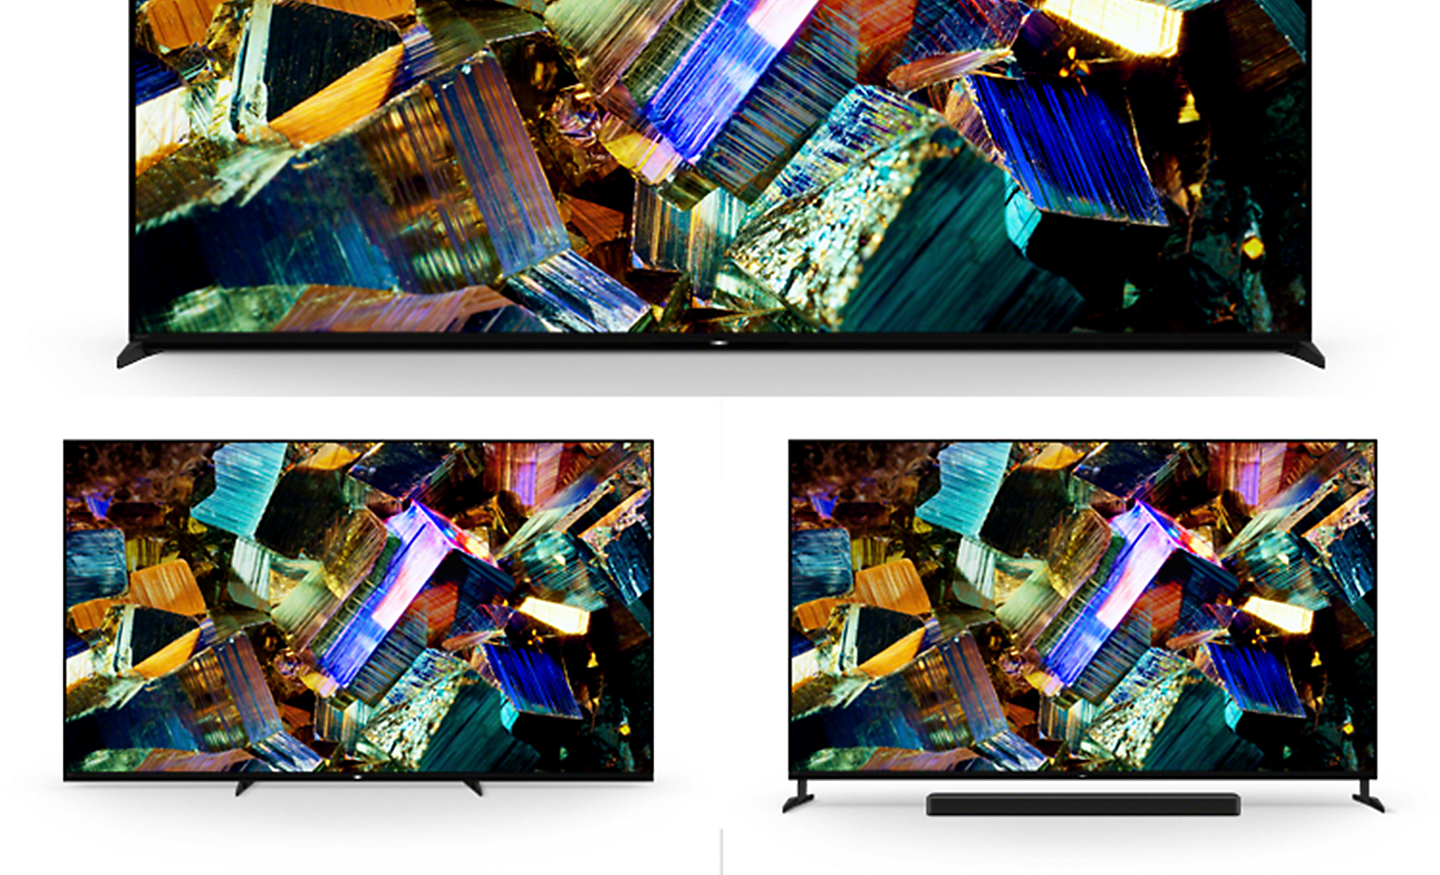 Image de trois téléviseurs BRAVIA de série Z9K montrant le socle en configuration standard, configuration pour espaces étroits et configuration pour barre de son avec captures d’écran de boîtes en aluminium colorées